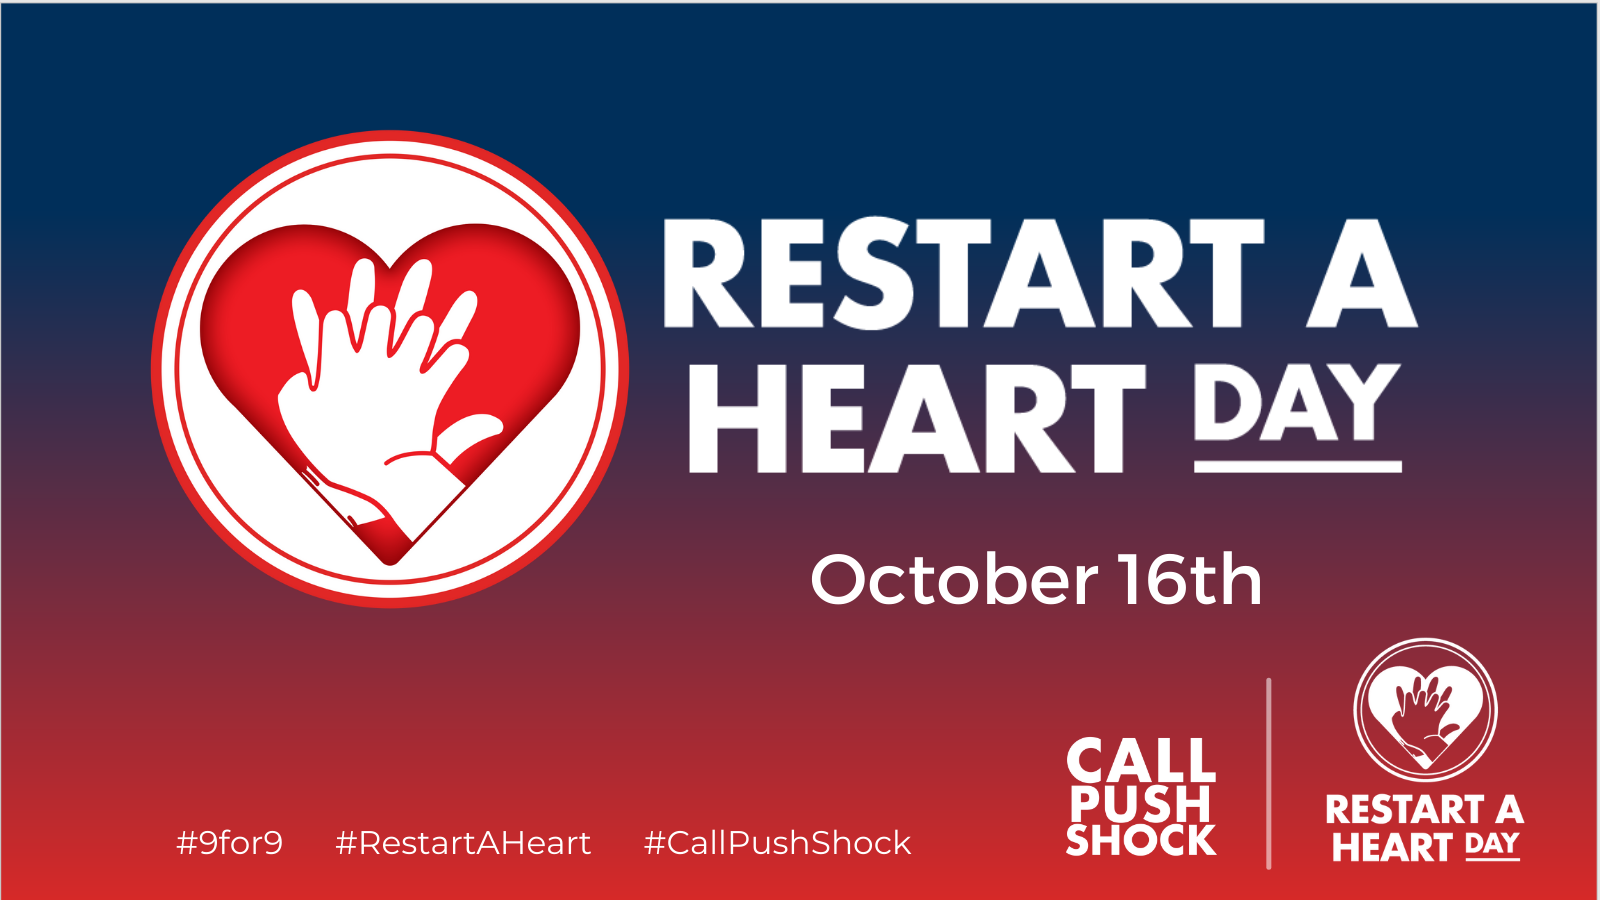 Restart a heart day banner. October 16th. #9for9 #RestartAHeart #CallPushShock